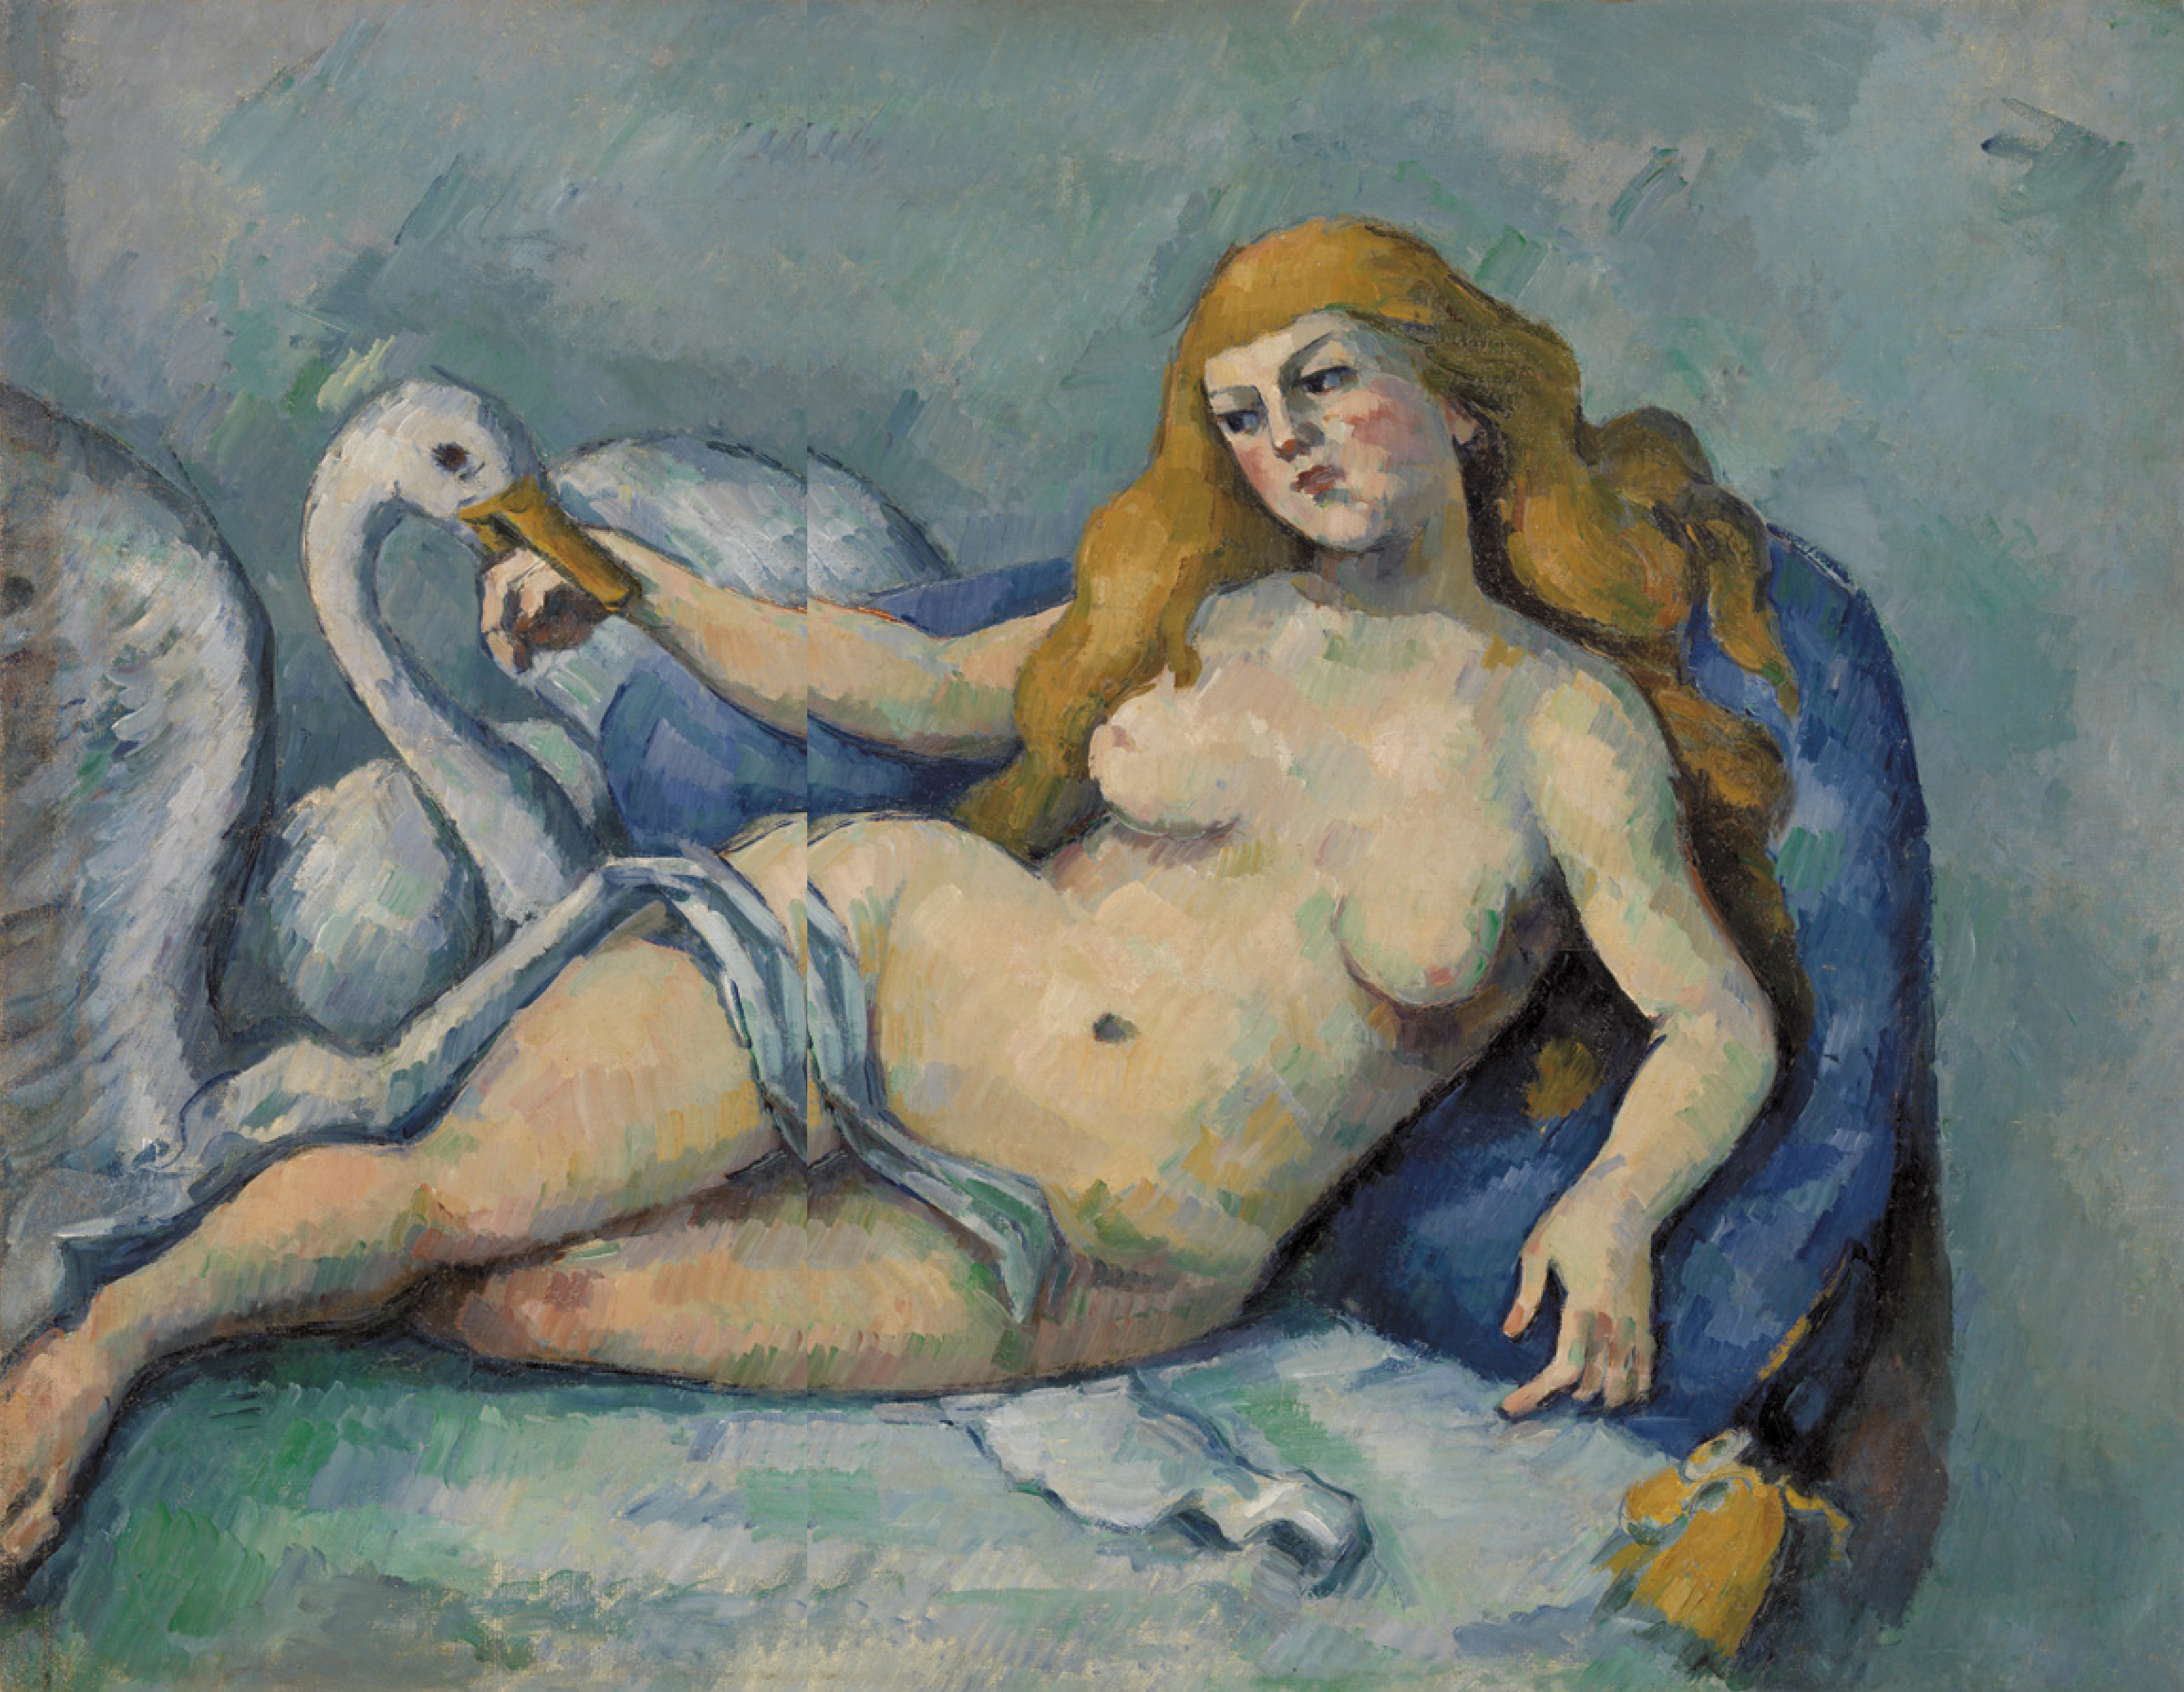 Paul Cézanne: Léda és a hattyú (Léda au cygne), 1880 körül, olaj, vászon, 59,7×74,9 cm, The Barnes Foundation